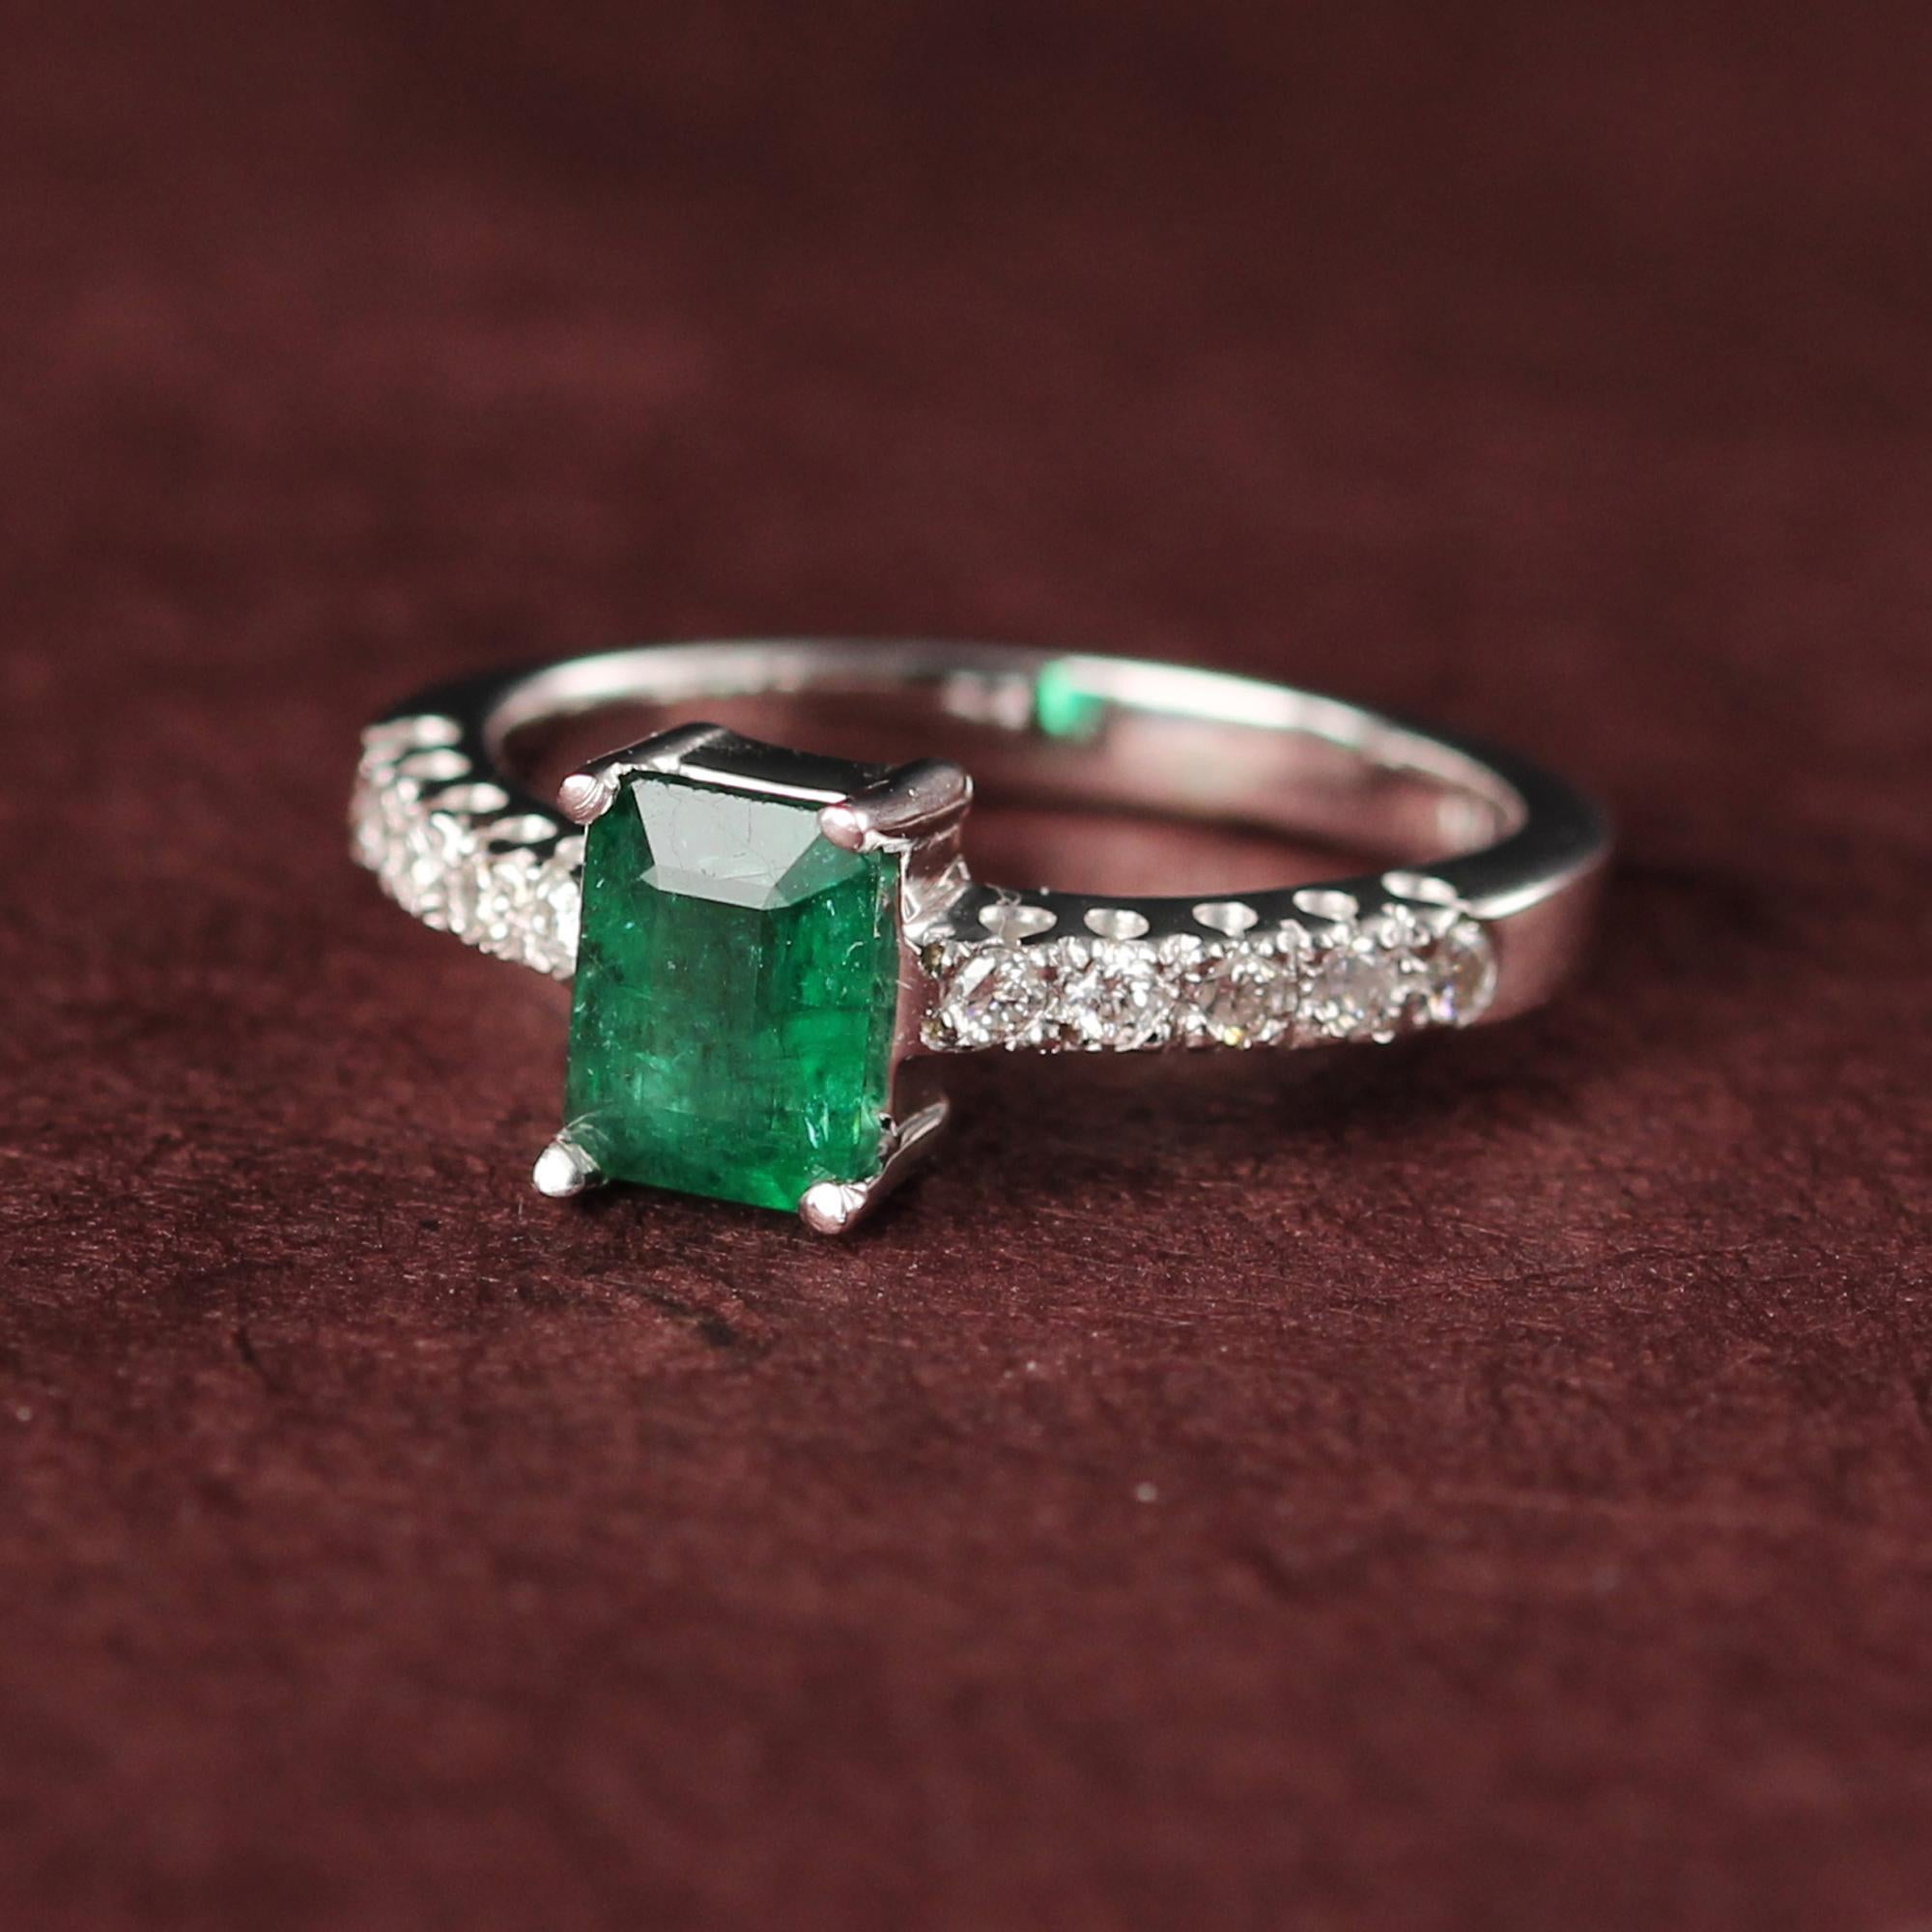 Klassischer Smaragd Edelstein - Smaragd-Schliff Ring
Plus Weißgold und Diamanten 
Gesamt Smaragd 0,80 Karat. (7 x 5 mm) 
Schöne grüne Farbe und hat natürliche Einschlüsse
Diamanten insgesamt 0,20 Karat G-VS
Insgesamt Gold 14K Weißgold 3,30